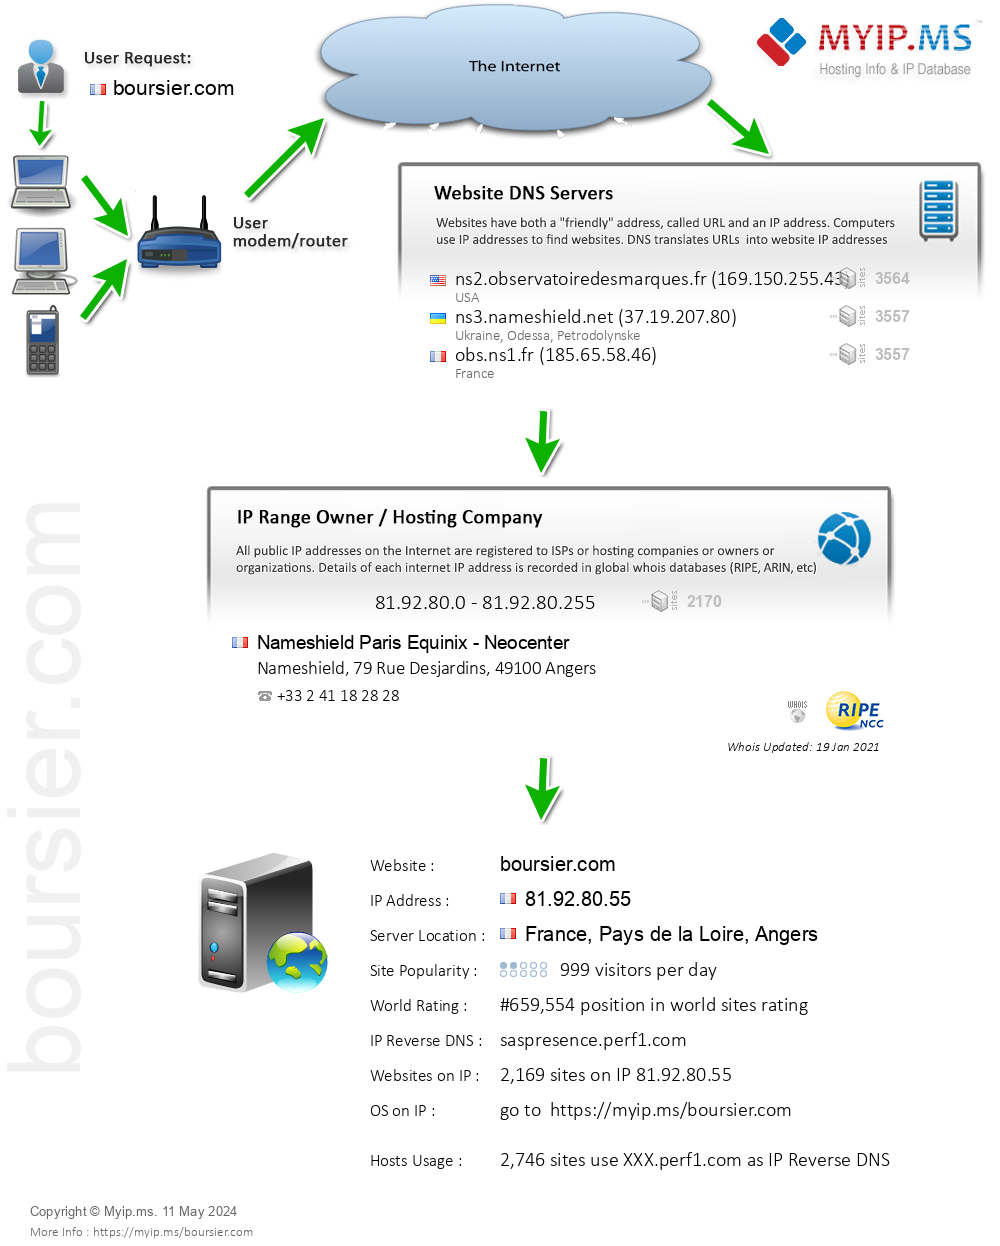 Boursier.com - Website Hosting Visual IP Diagram